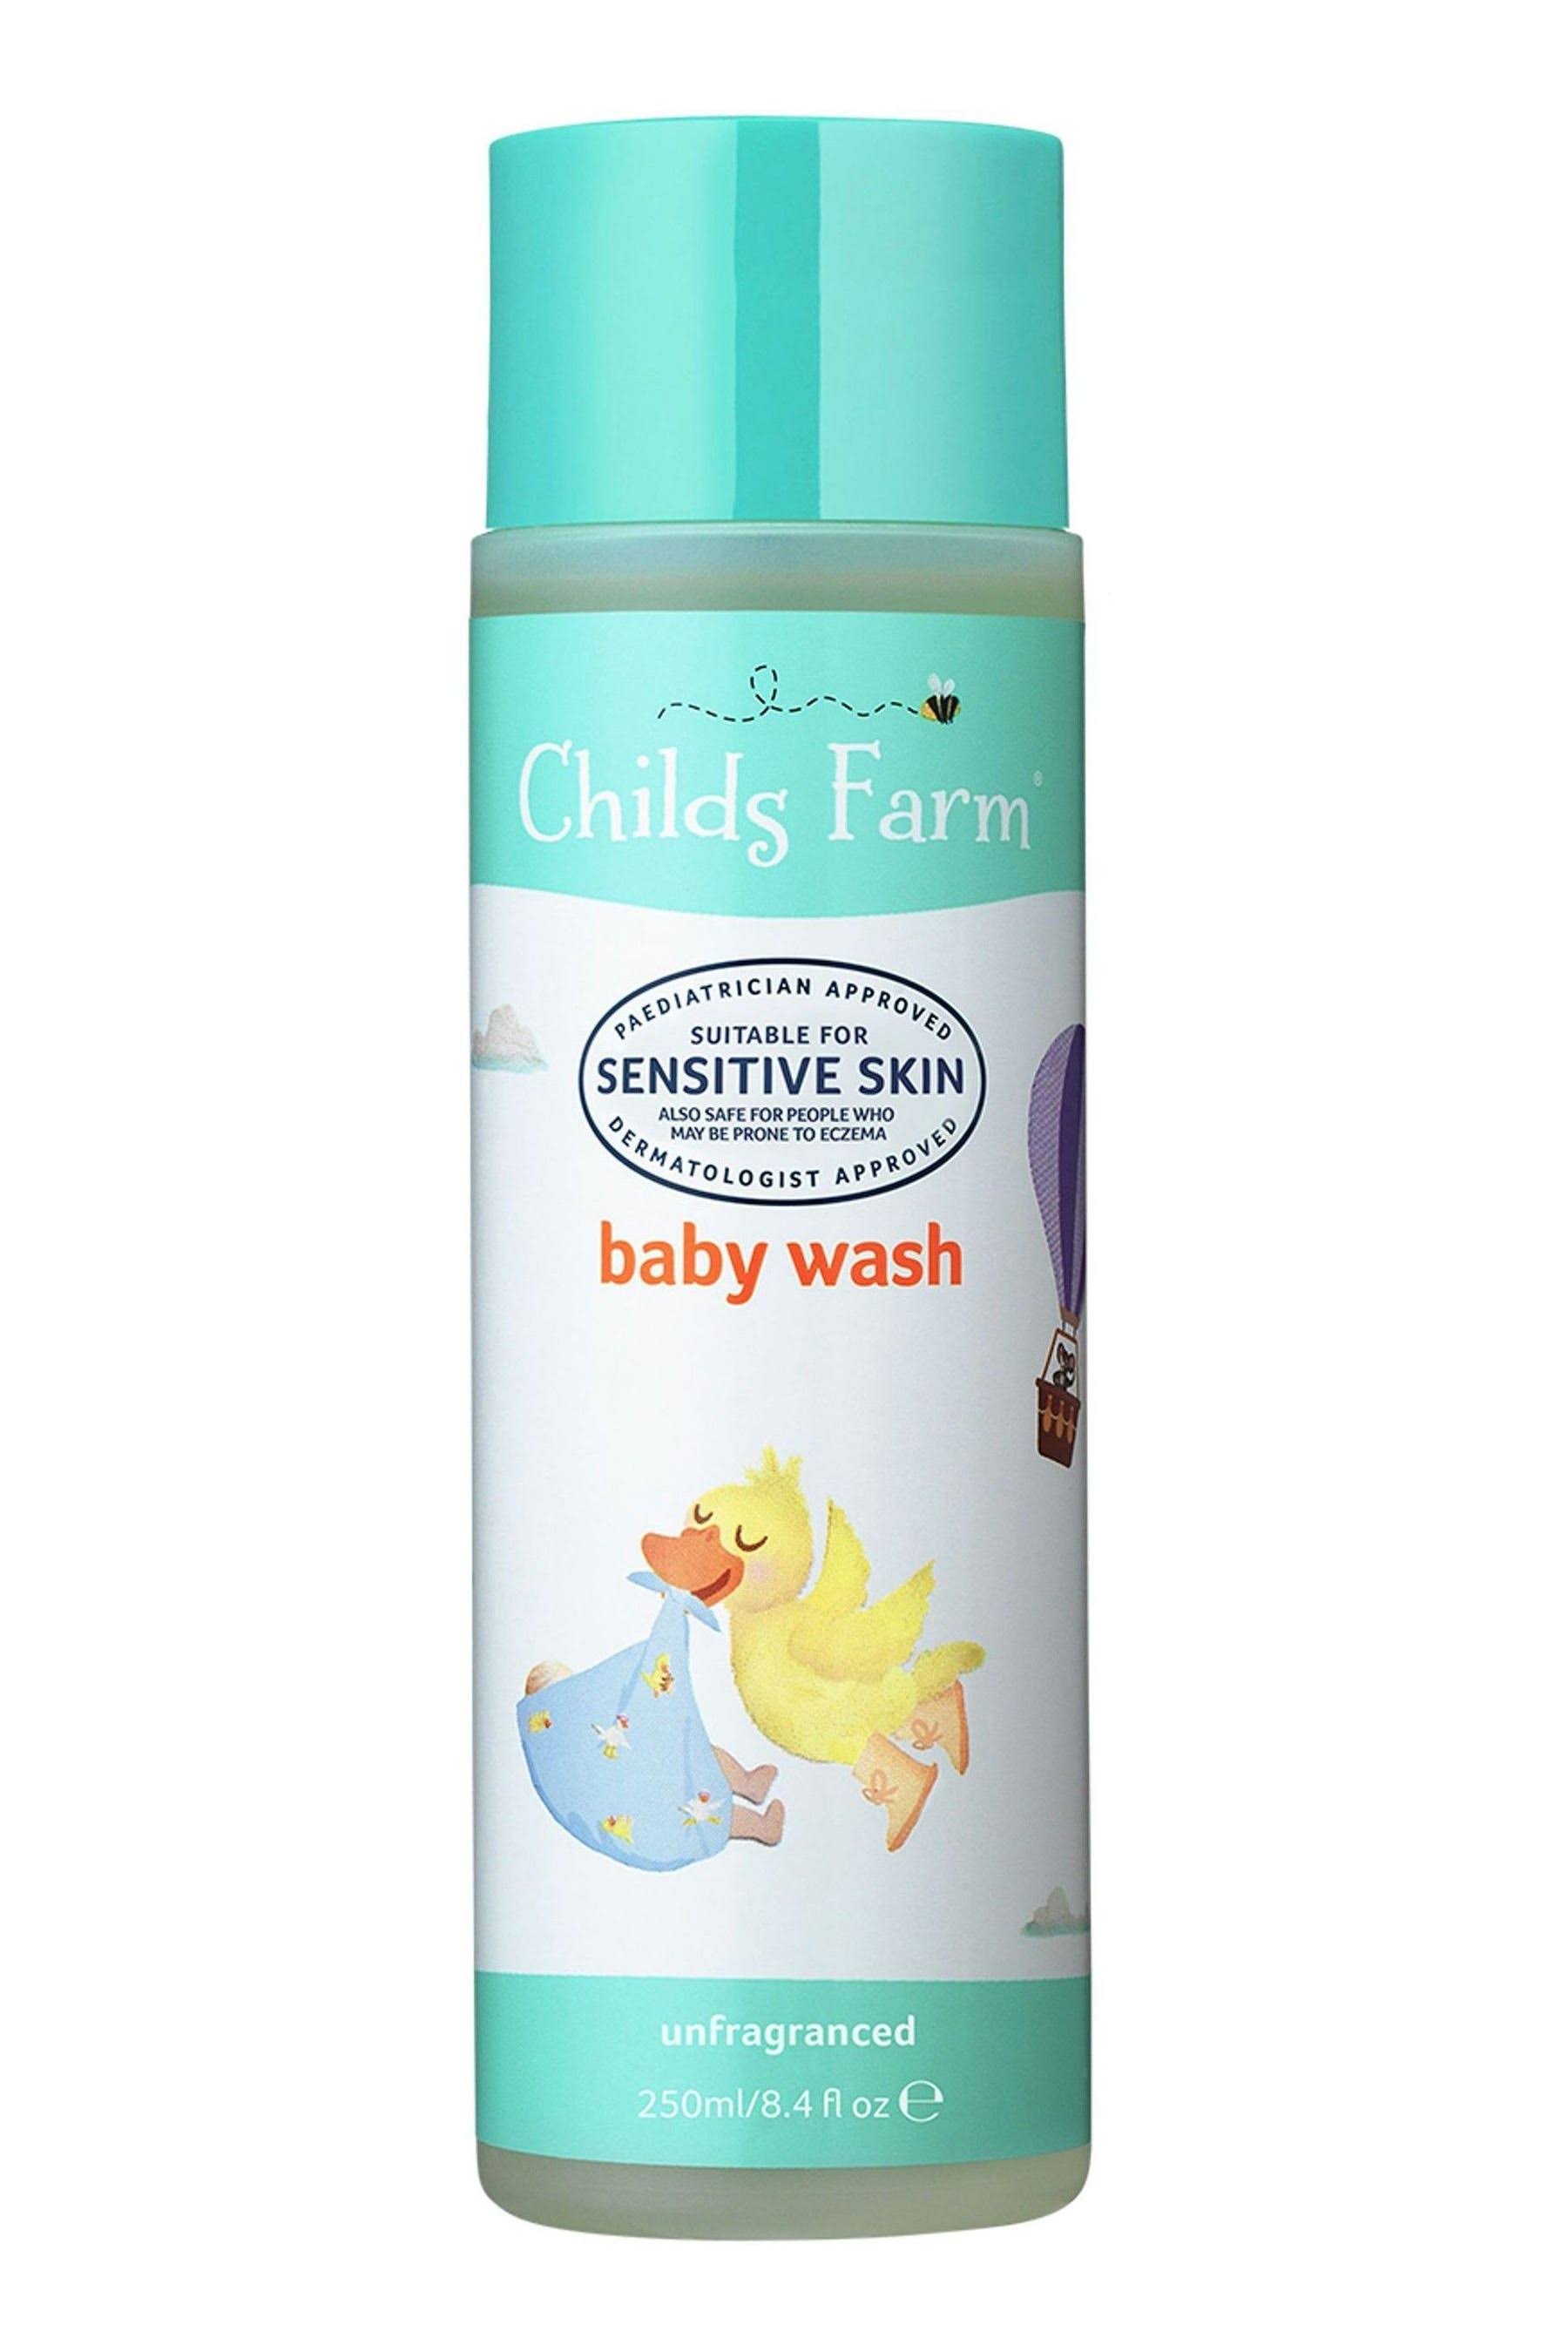 Childs Farm Fragrance Free Baby Wash - 250ml